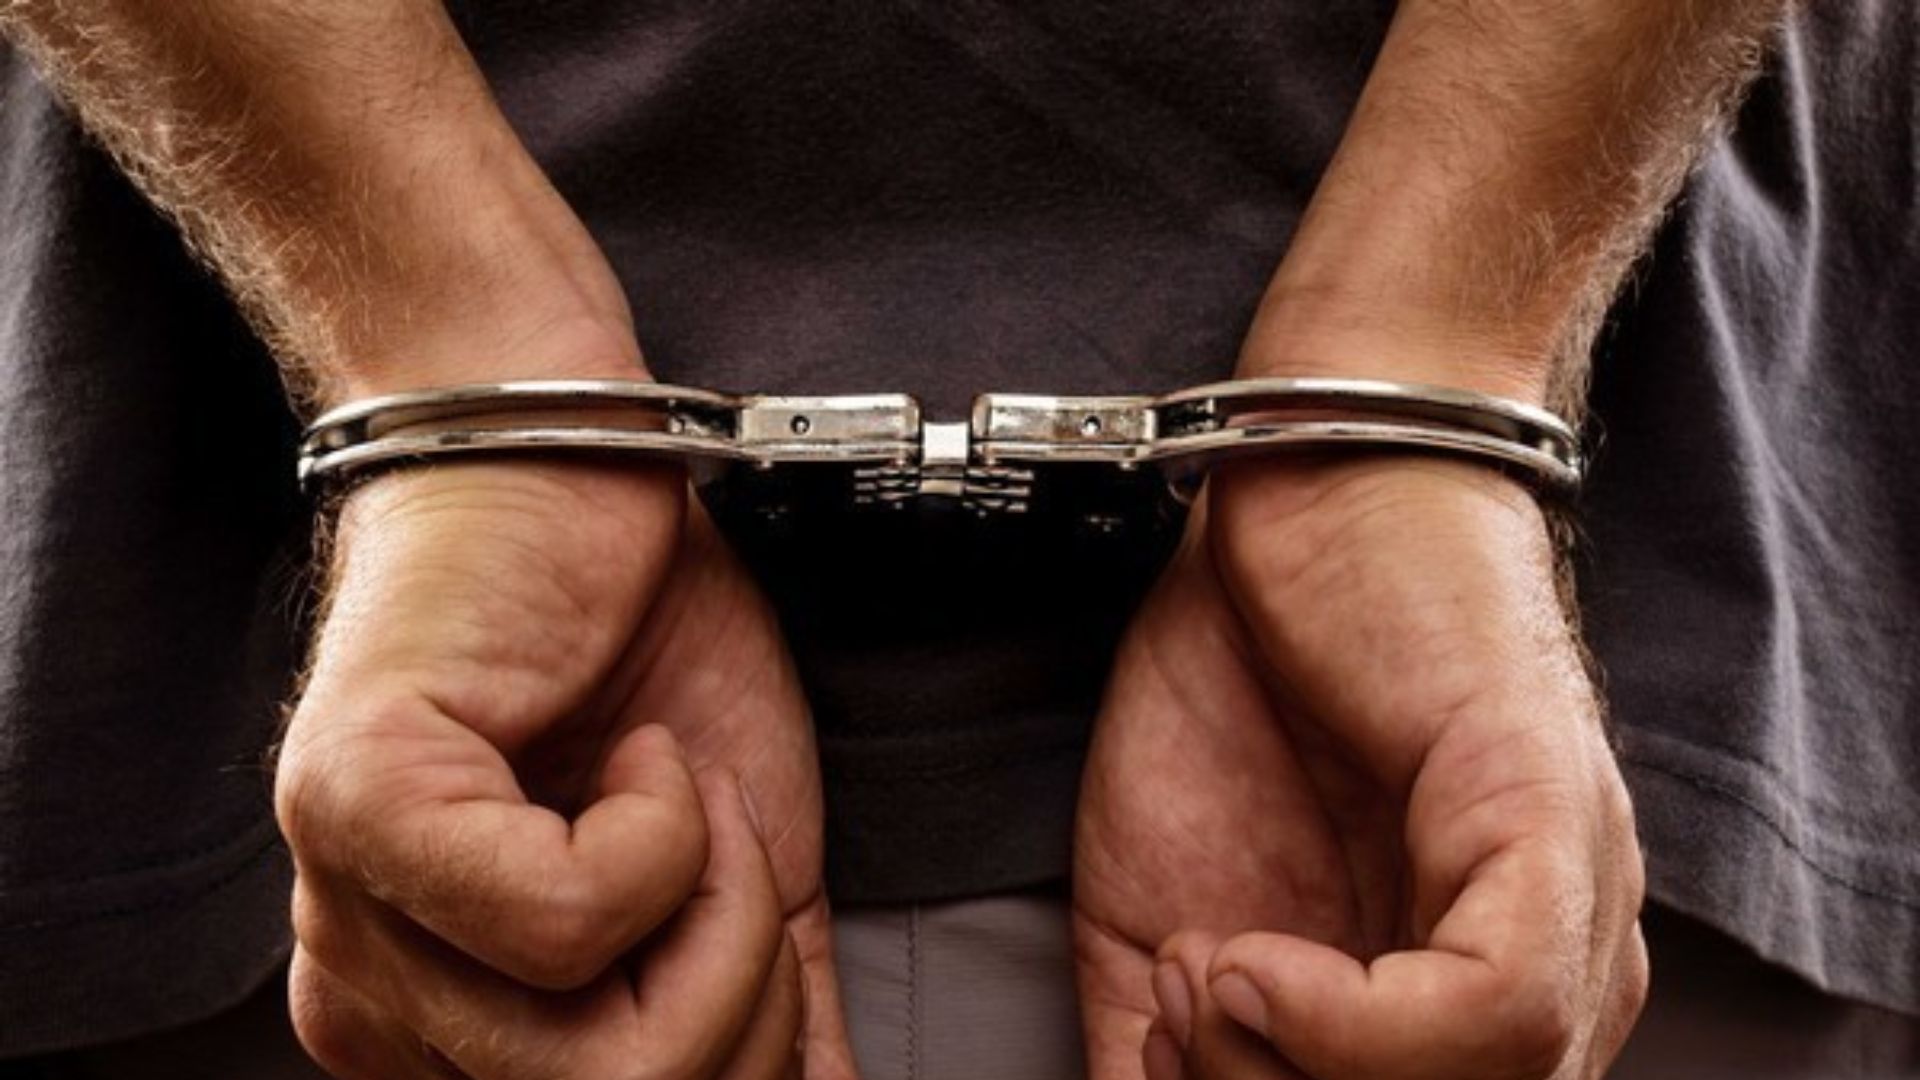 CBI arrests head constable in bribery case